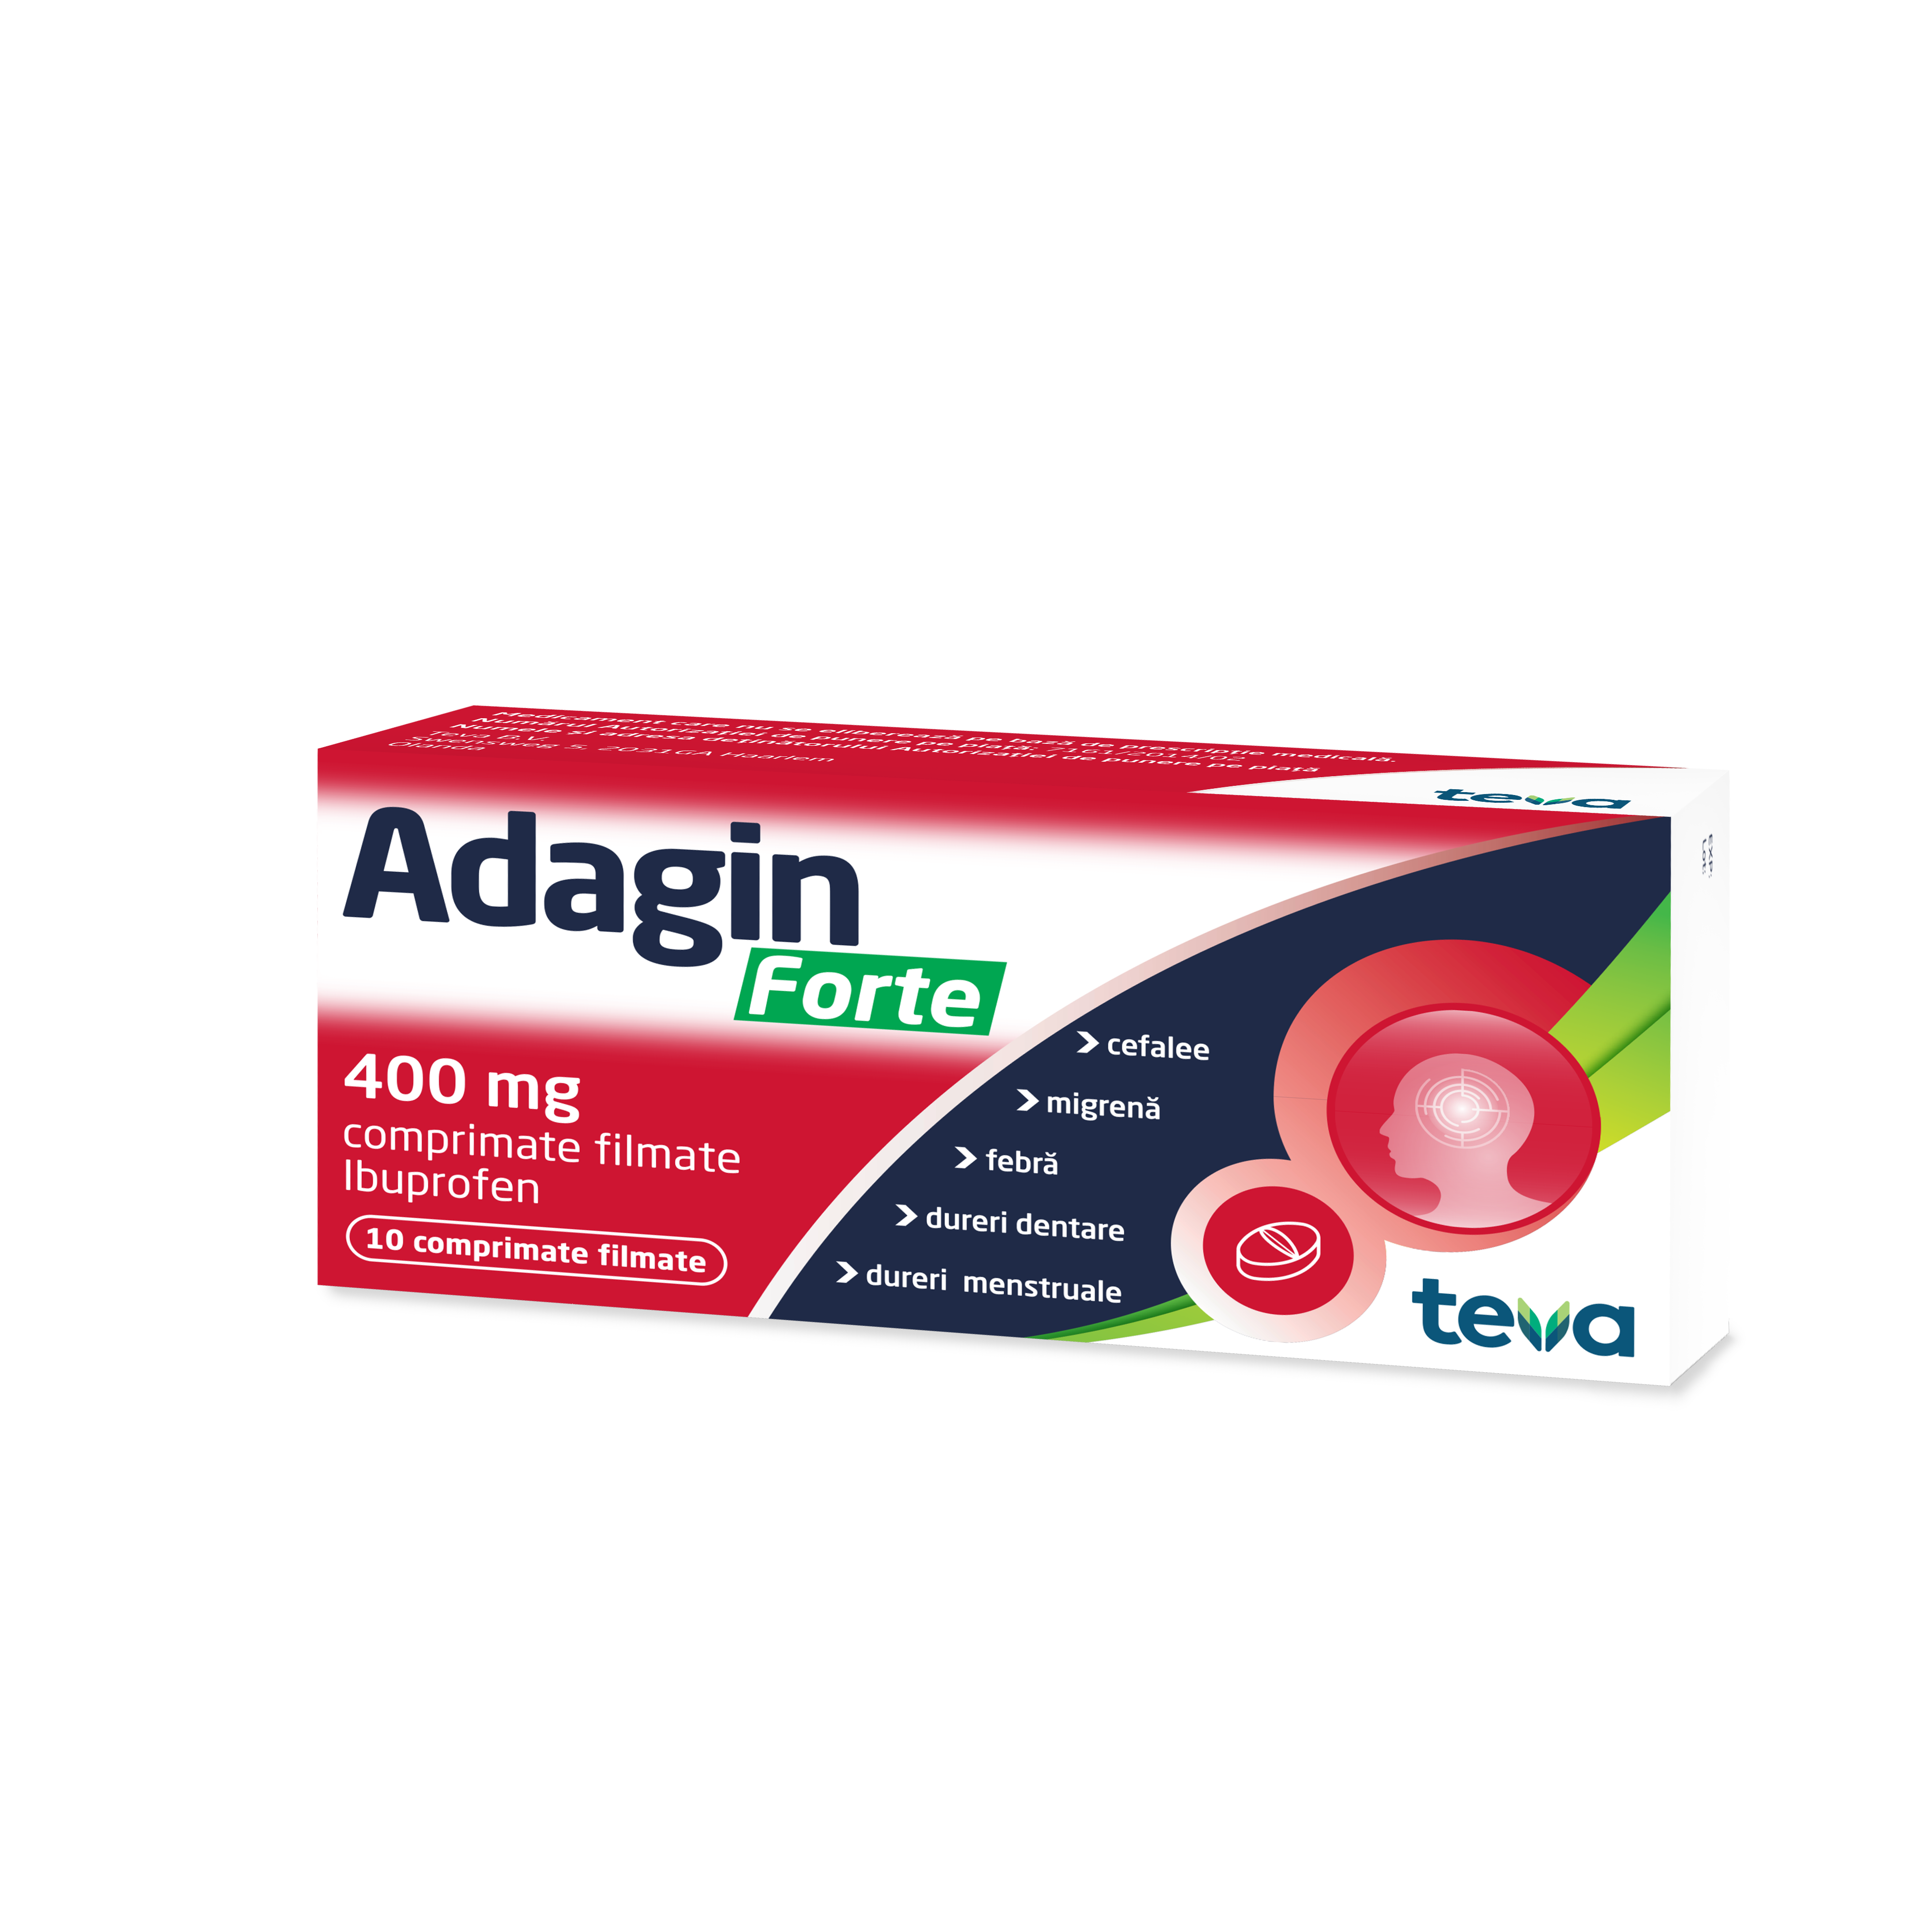 Antiinflamator - Adagin 400mg, 10 comprimate filmate, Actavis, sinapis.ro